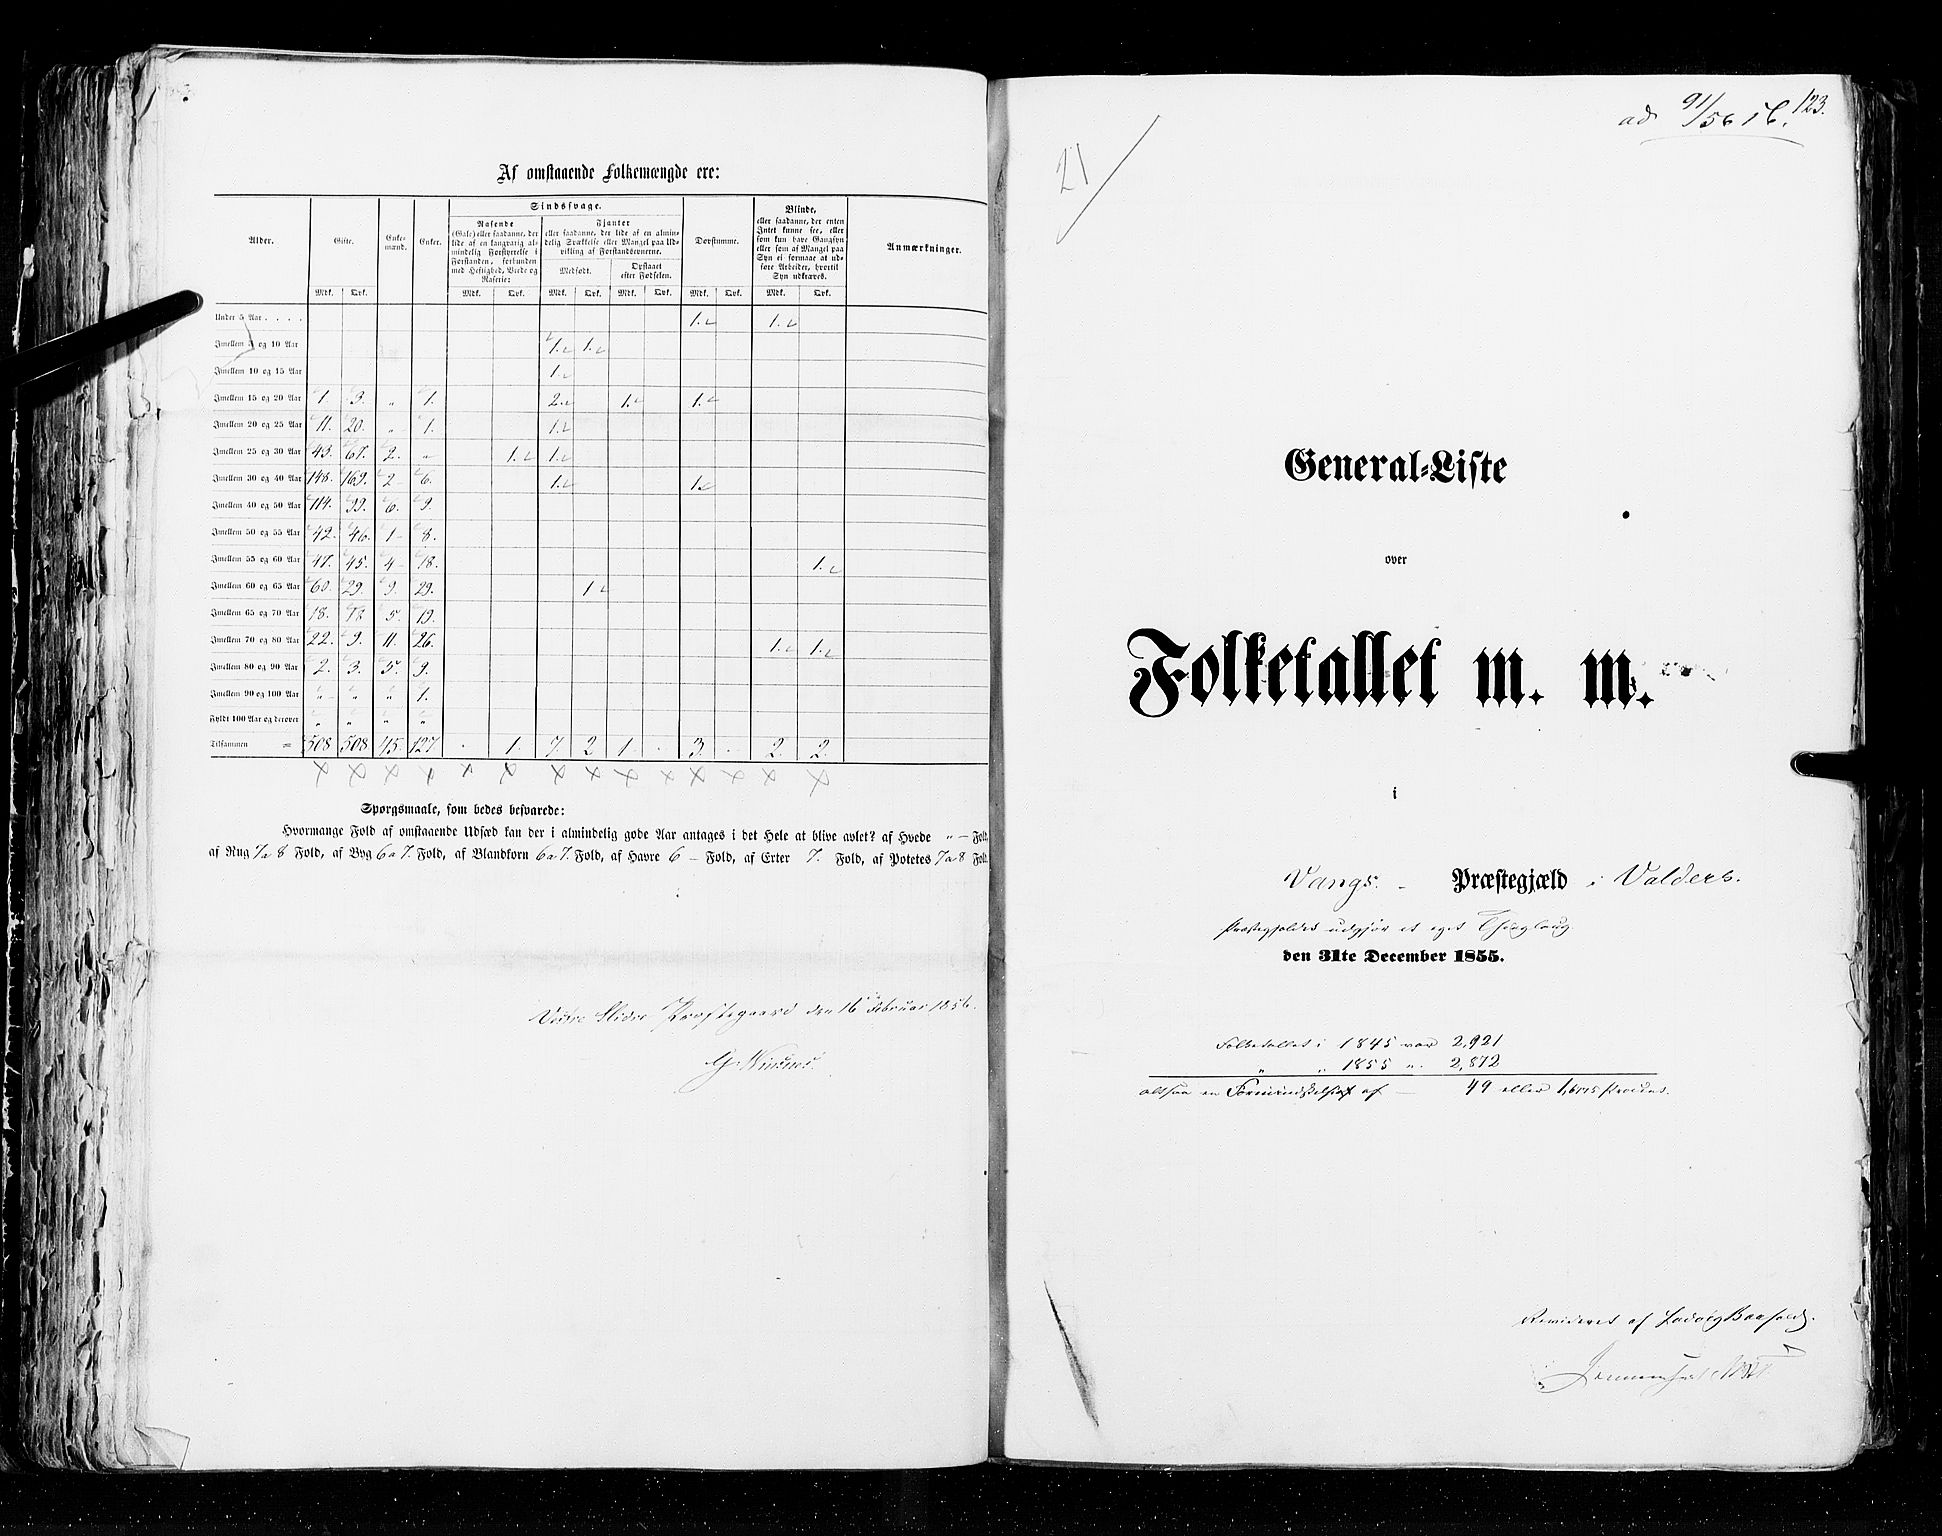 RA, Folketellingen 1855, bind 2: Kristians amt, Buskerud amt og Jarlsberg og Larvik amt, 1855, s. 123